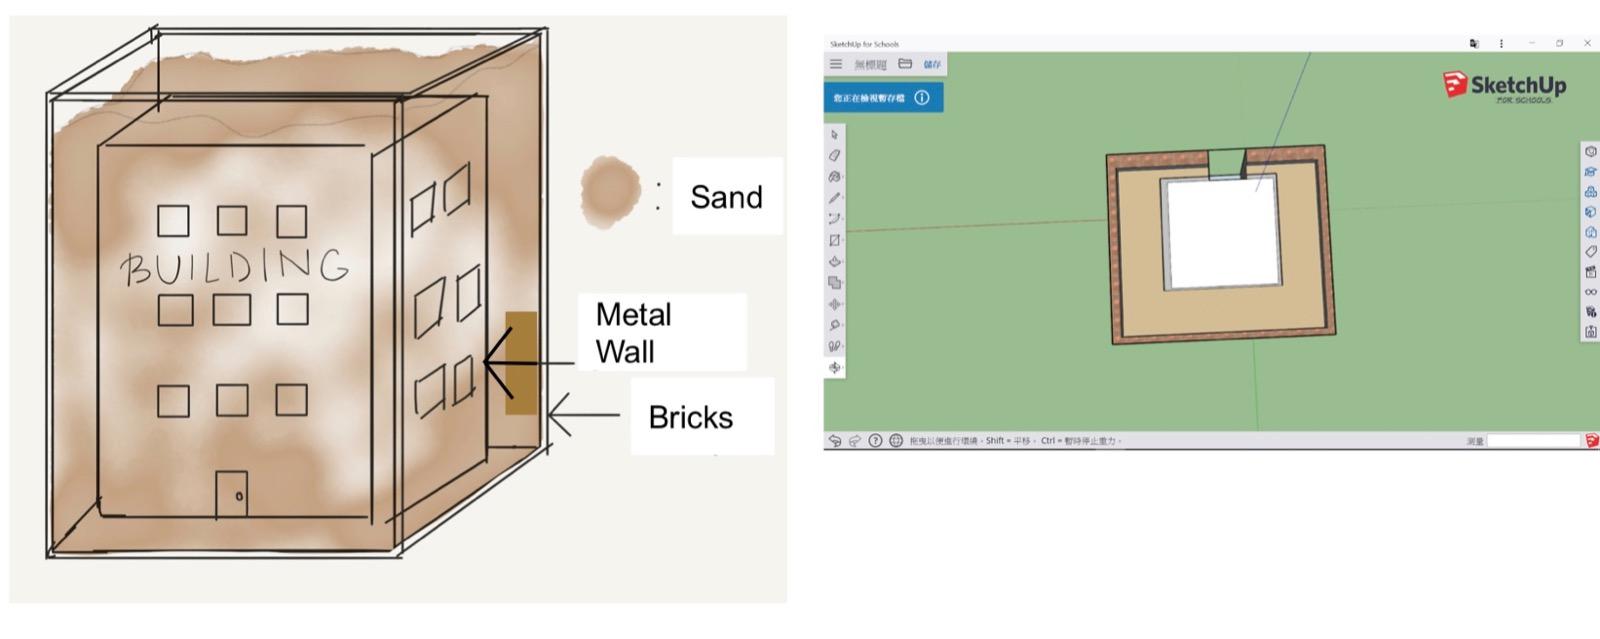 图2 建筑模型使用了沙粒去覆盖外墙，以金属为内墙，及以砖头承载结构